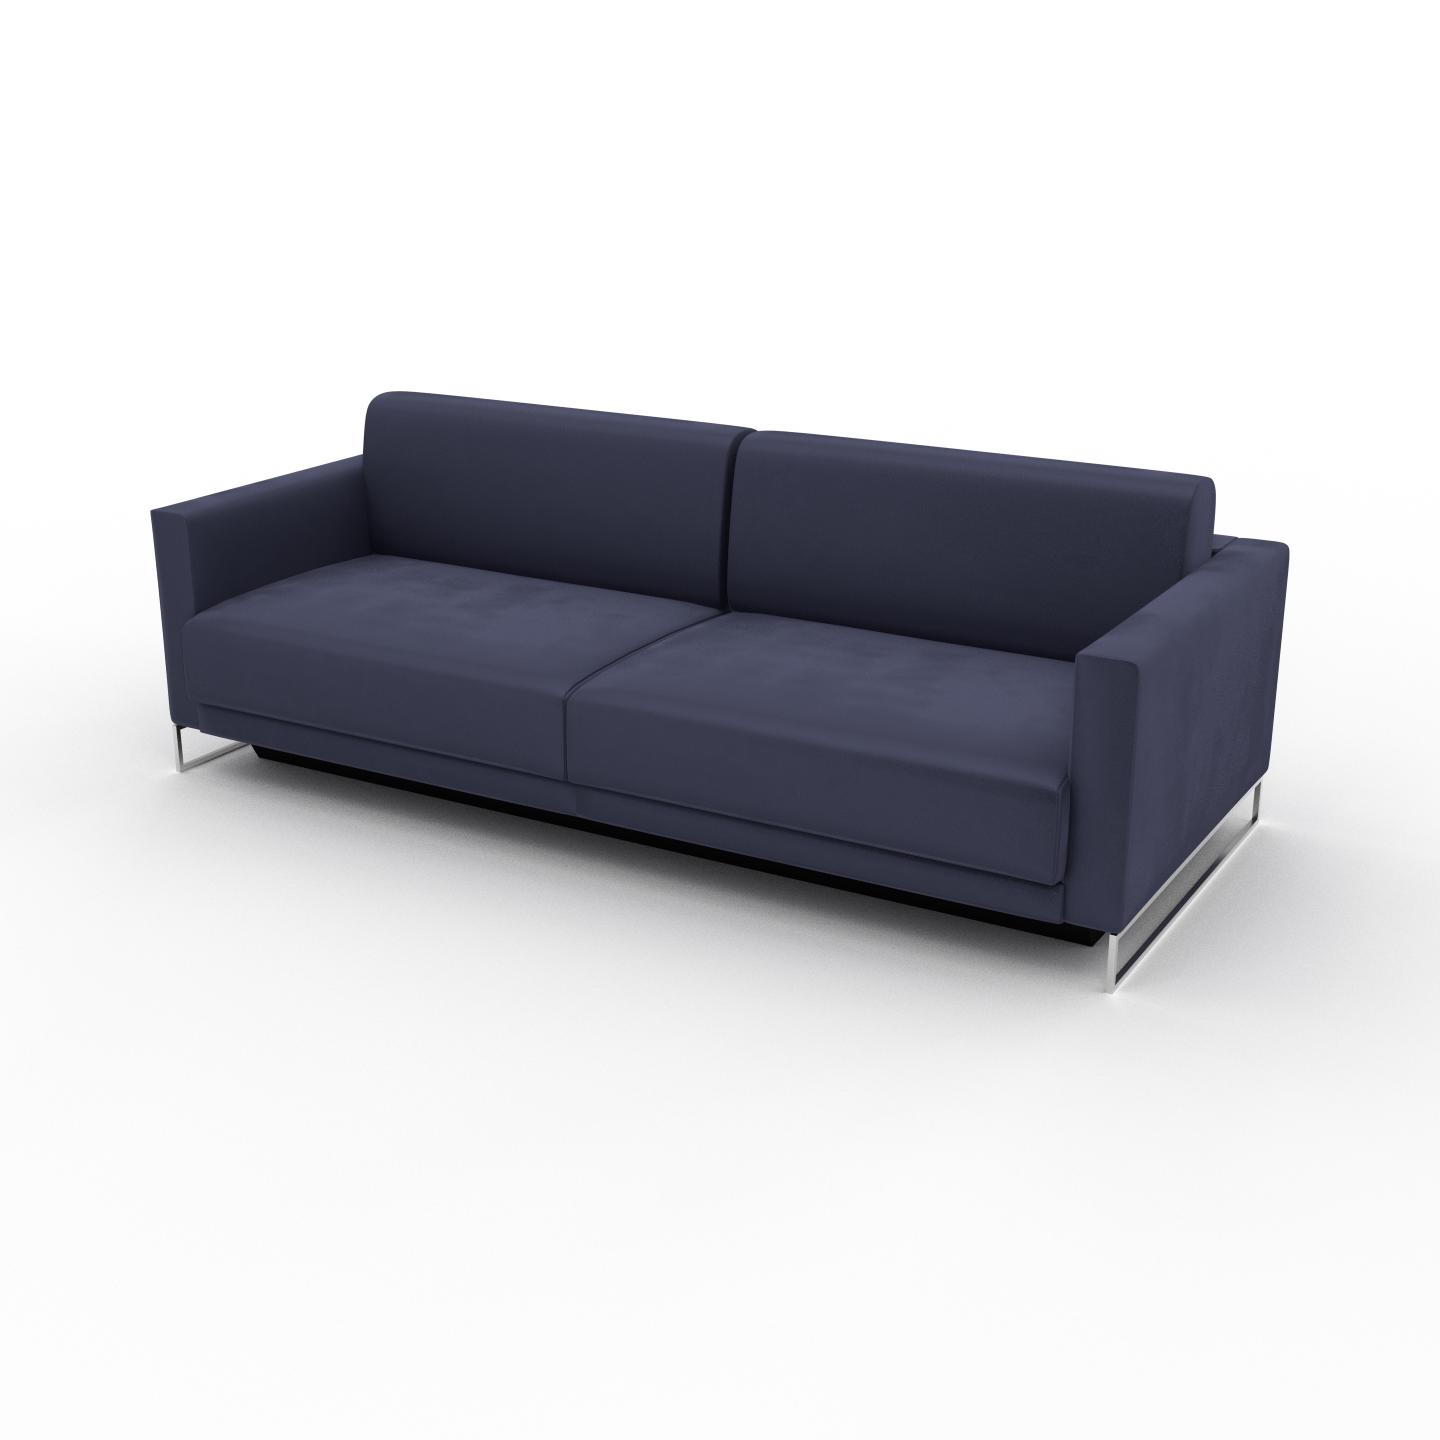 MYCS Sofa 3-Sitzer Samt Ultramarinblau Samt - Elegantes, gemütliches 3-Sitzer Sofa: Hochwertige Qualität, einzigartiges Design - 224 x 75 x 98 cm,...